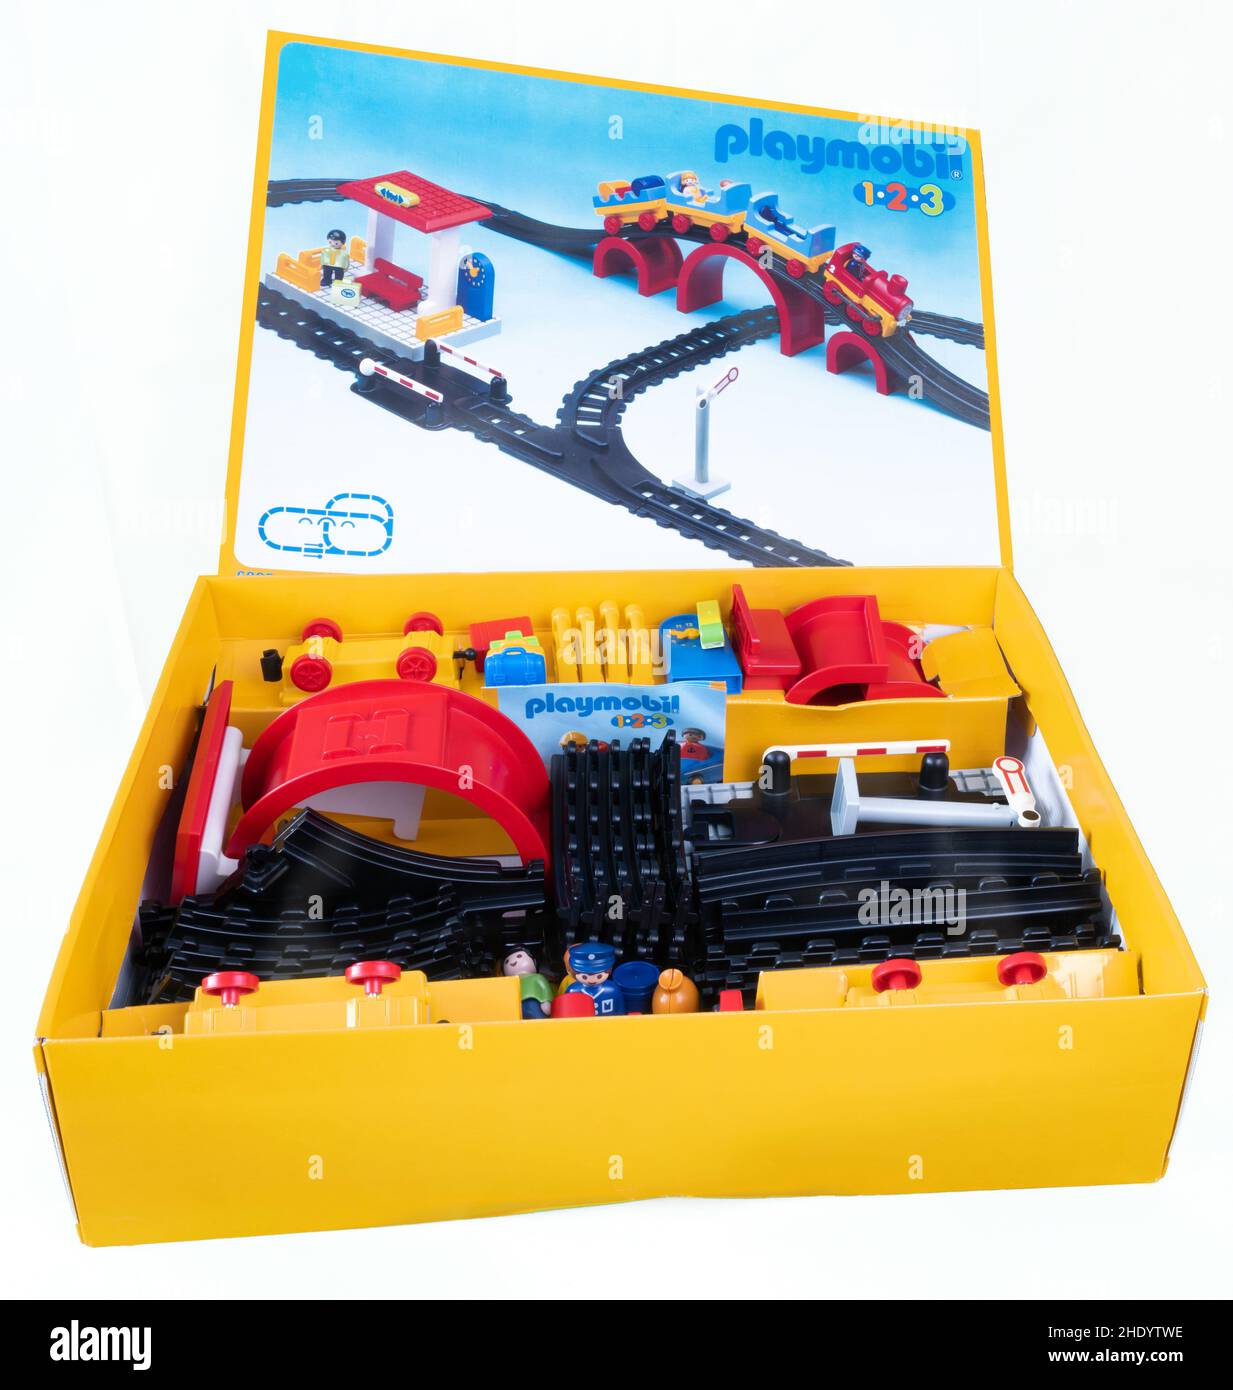 Playmobil 123 6905 Trainingset Spielzeug Stockfotografie - Alamy